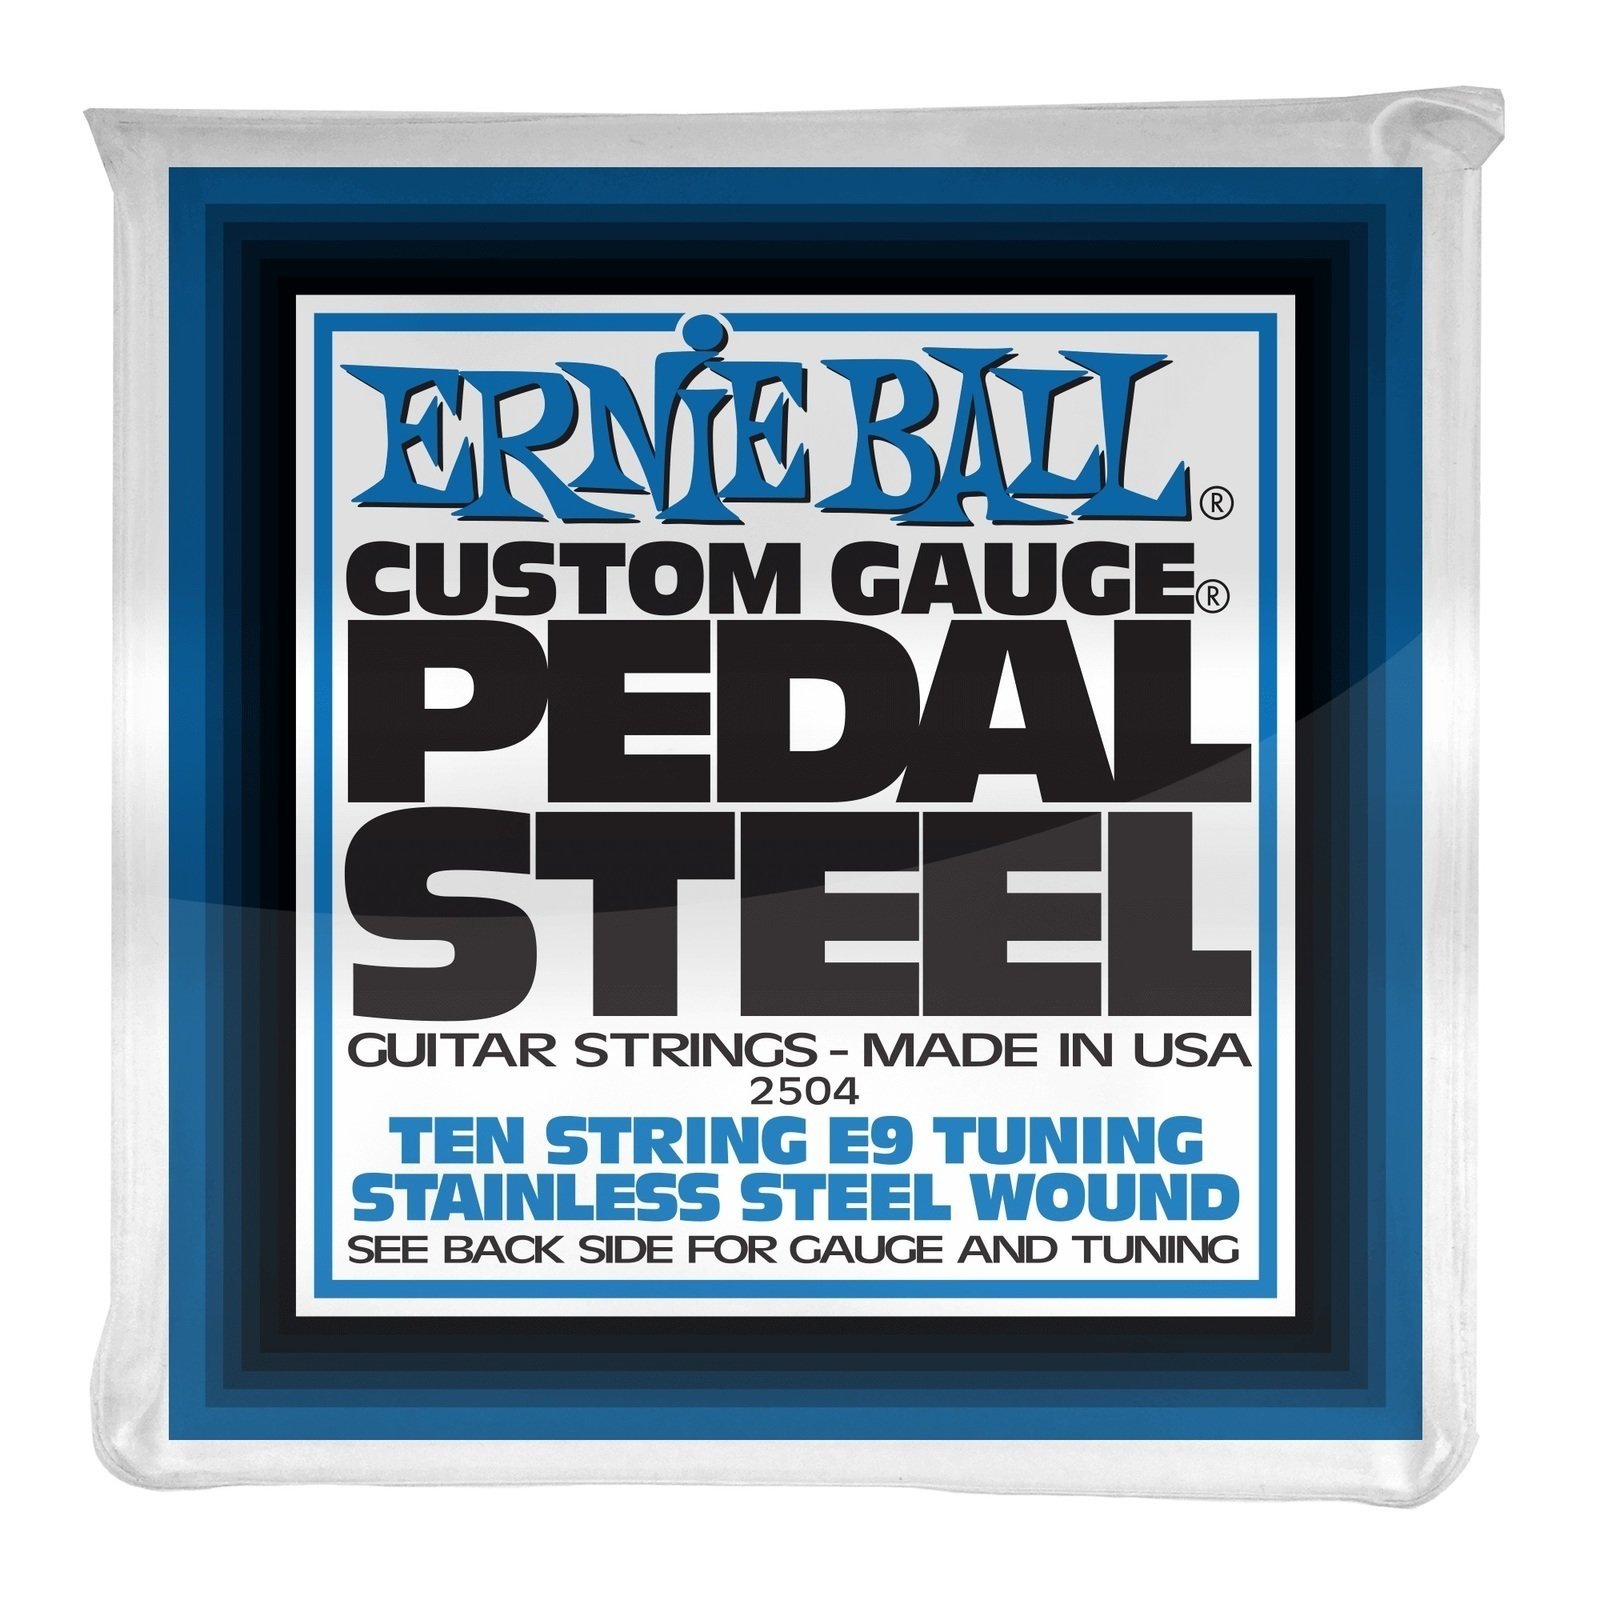 Guitar strings Ernie Ball 2504 Pedal Steel